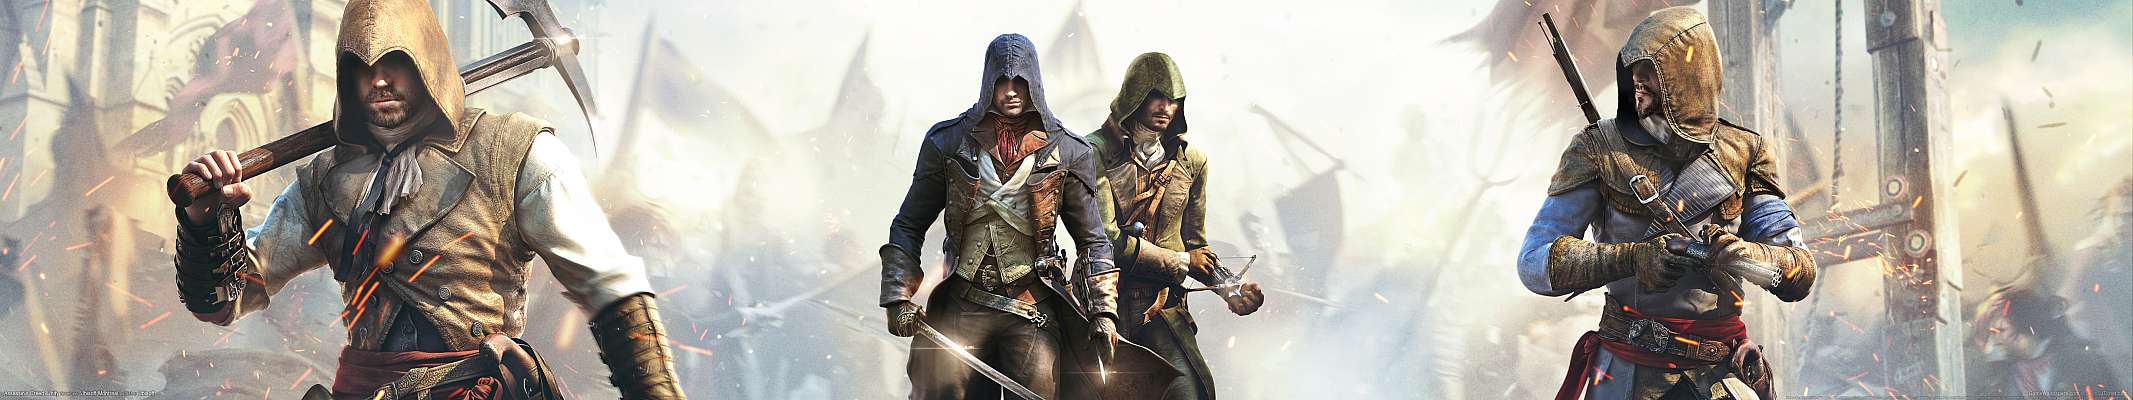 Assassin's Creed: Unity triple screen fondo de escritorio